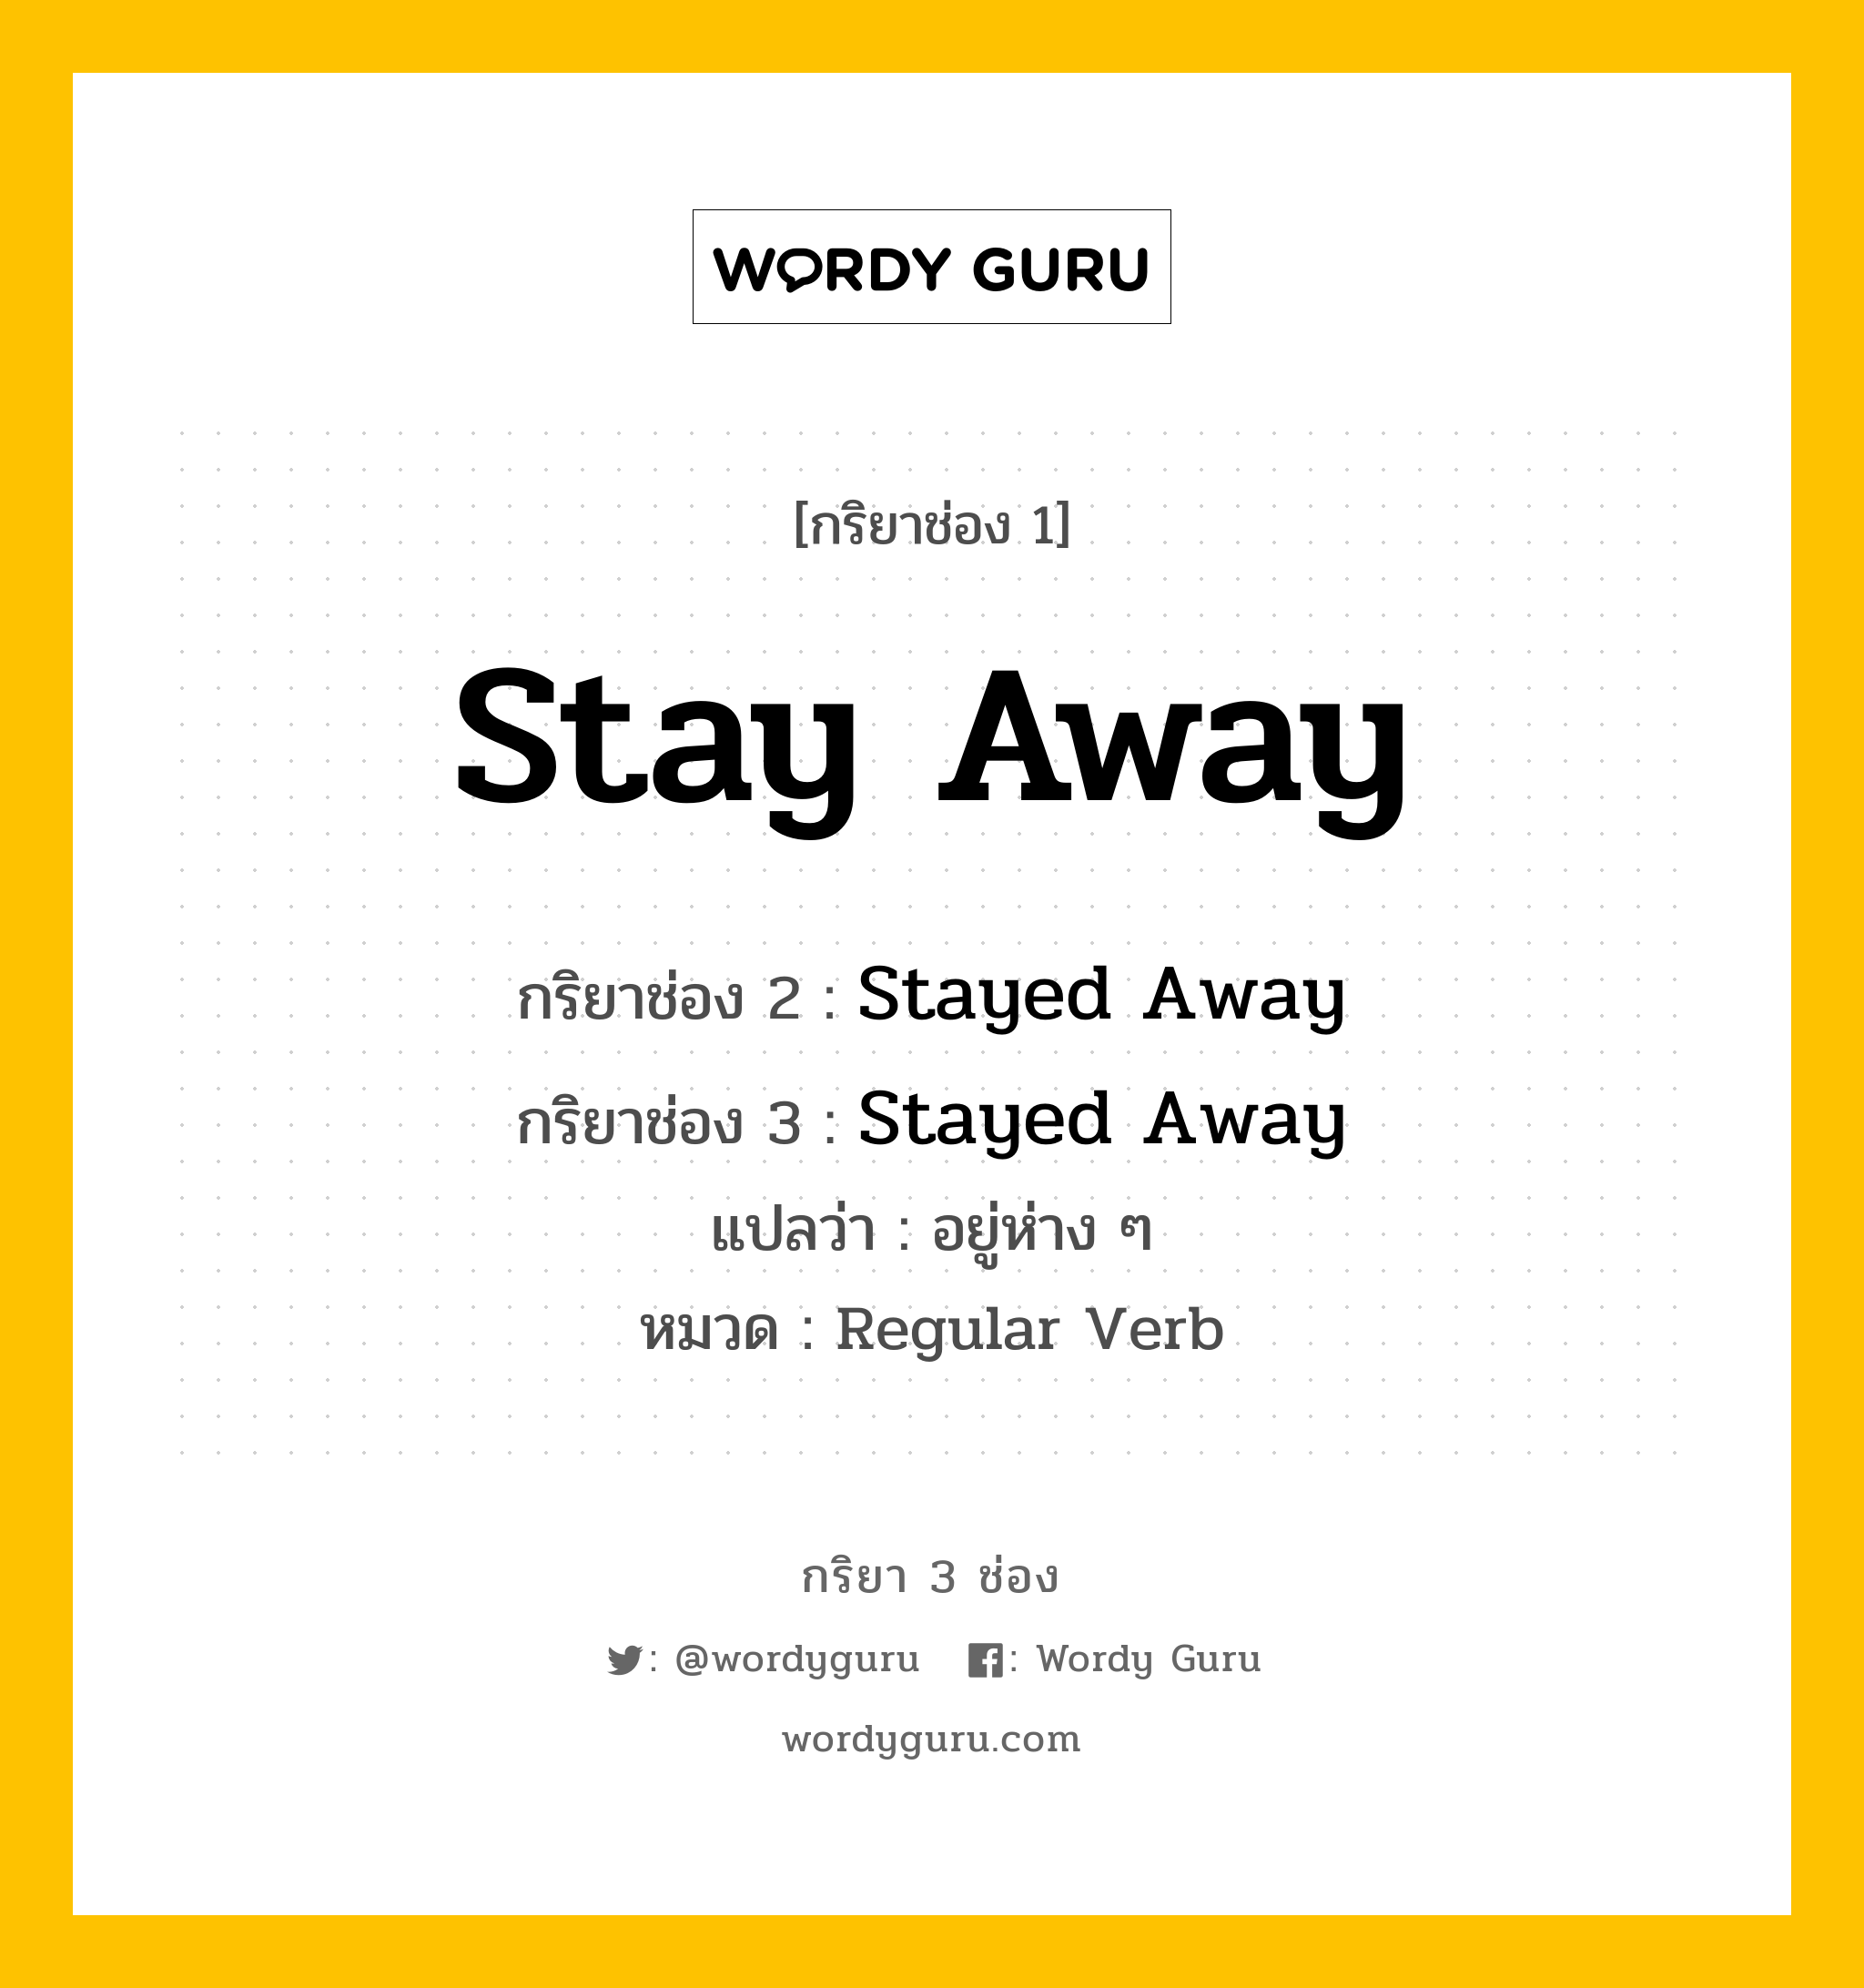 กริยา 3 ช่อง: Stay Away ช่อง 2 Stay Away ช่อง 3 คืออะไร, กริยาช่อง 1 Stay Away กริยาช่อง 2 Stayed Away กริยาช่อง 3 Stayed Away แปลว่า อยู่ห่าง ๆ หมวด Regular Verb หมวด Regular Verb